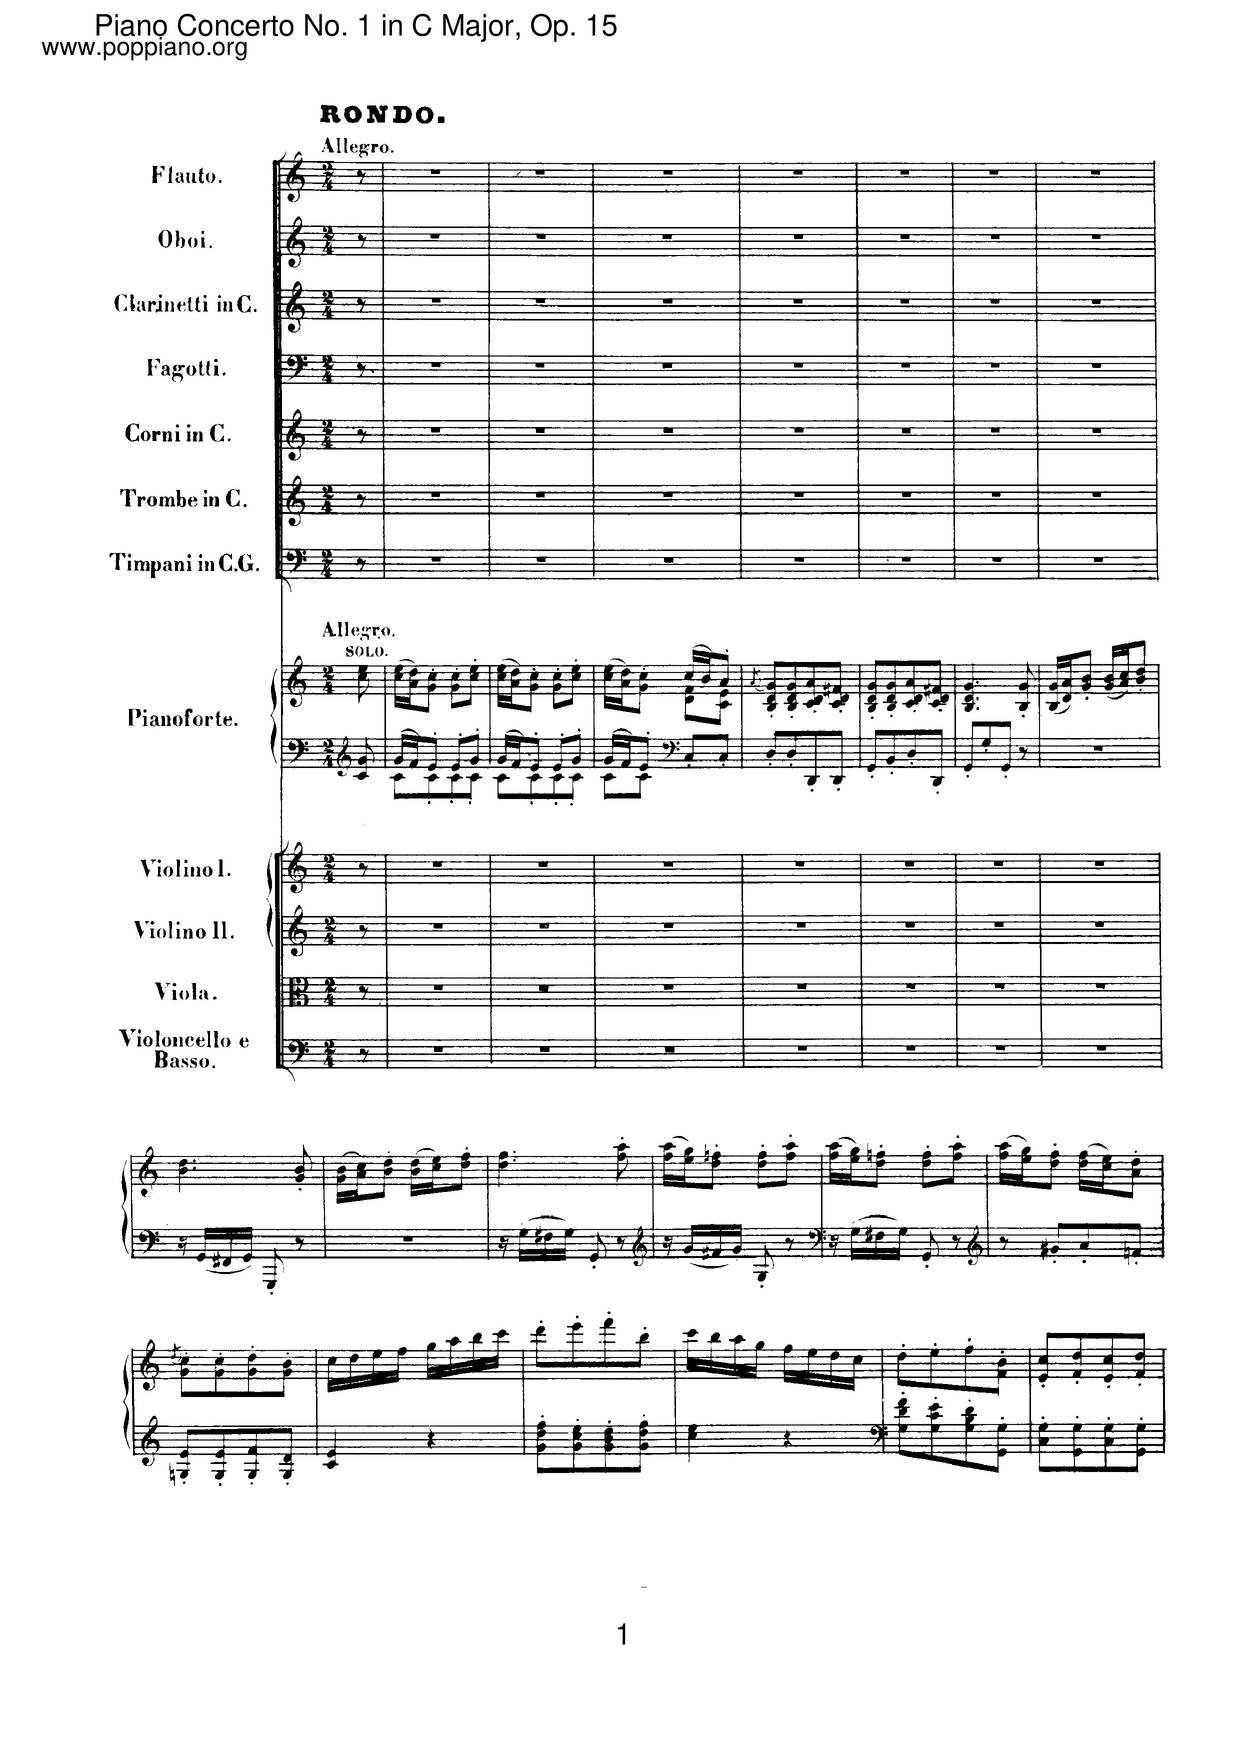 Piano Concerto No. 1 In C Major, Op. 15 Score